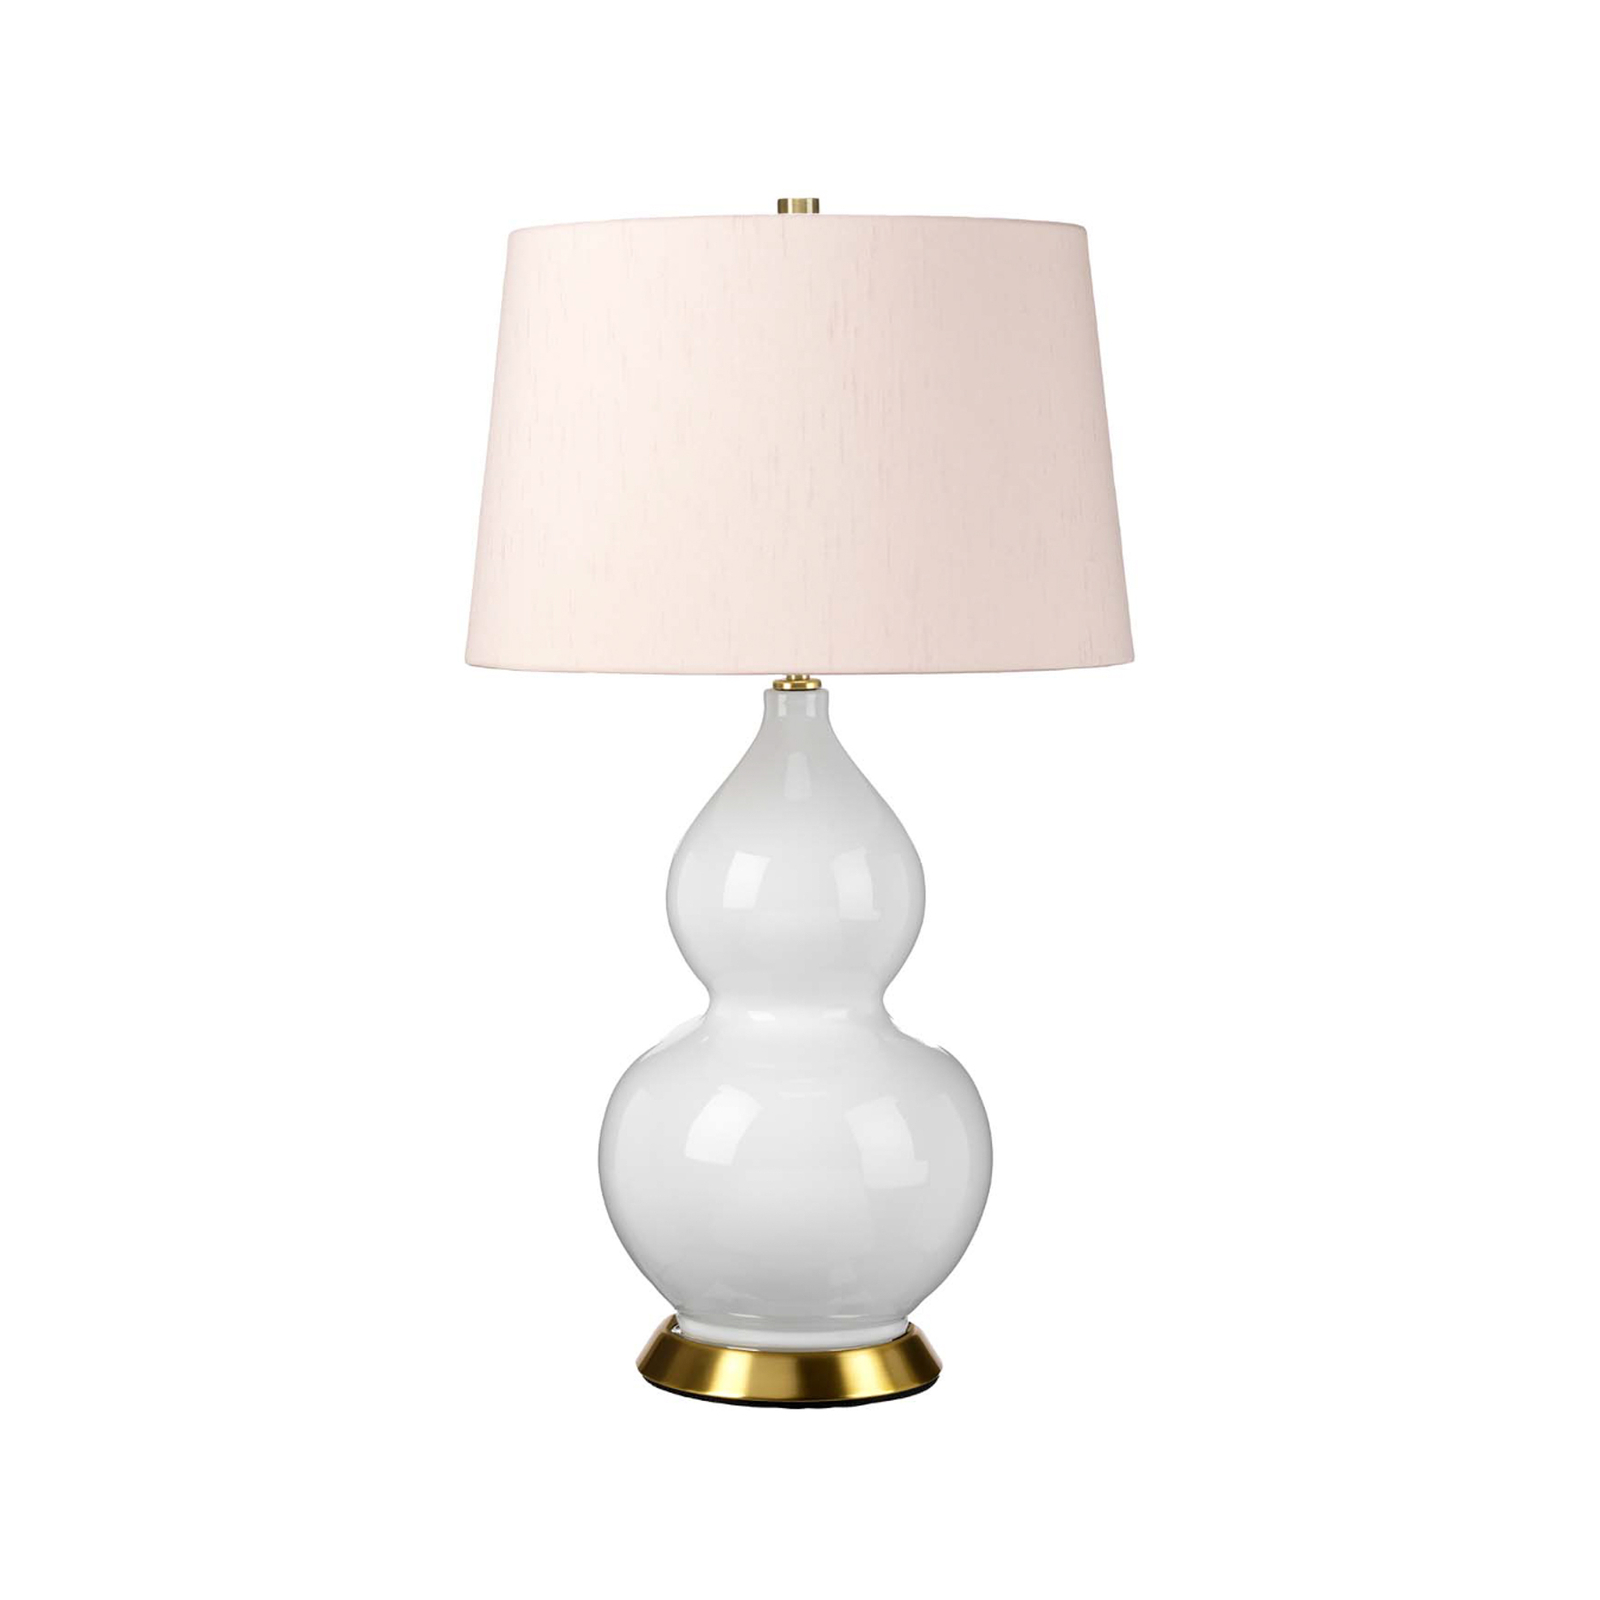 Isla antique brass/rosé textile table lamp